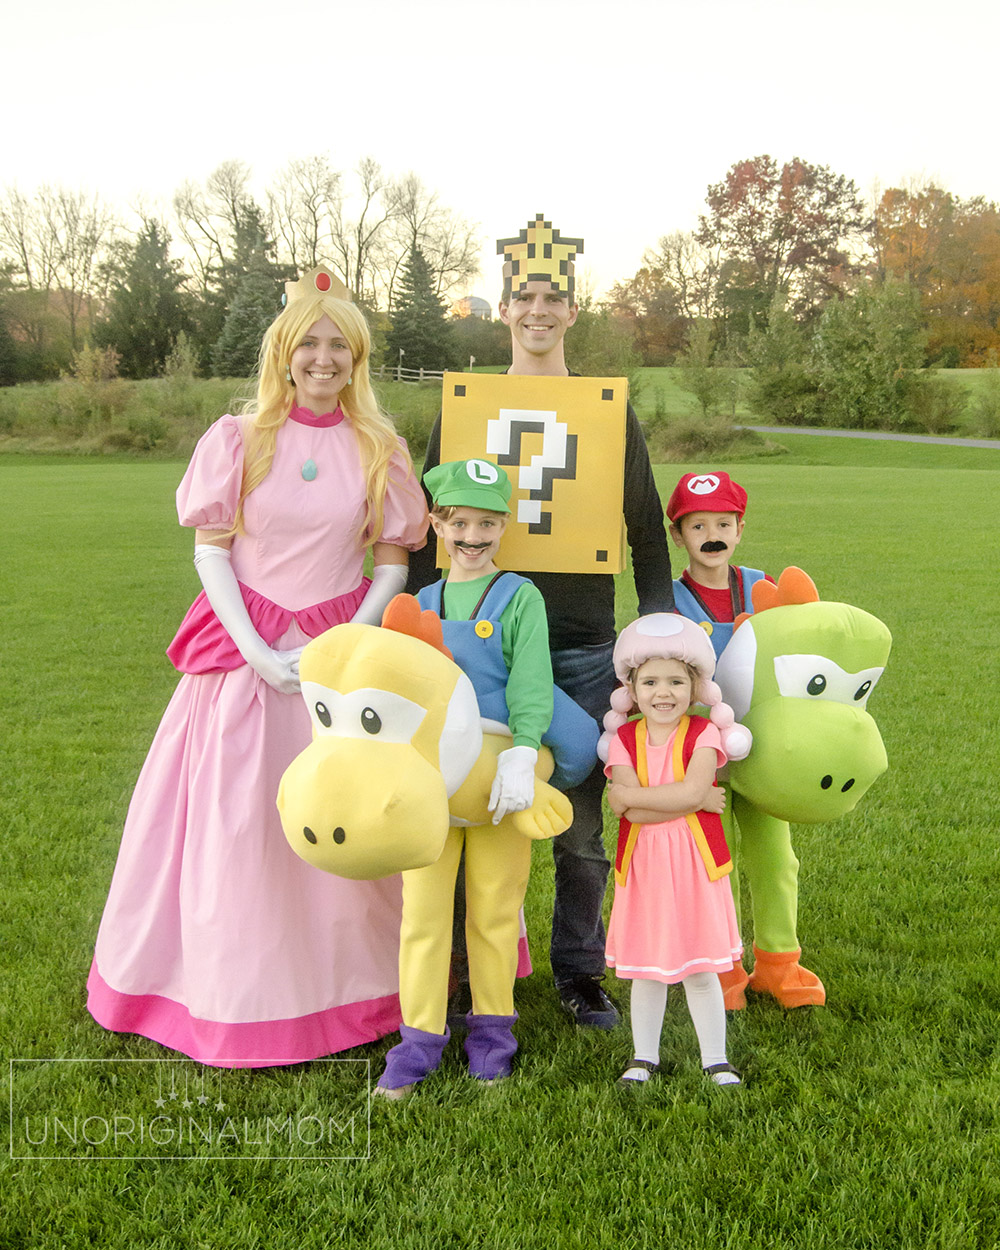 Mario and Princess Peach  Cute halloween costumes, Princess peach  halloween costume, Mario and princess peach